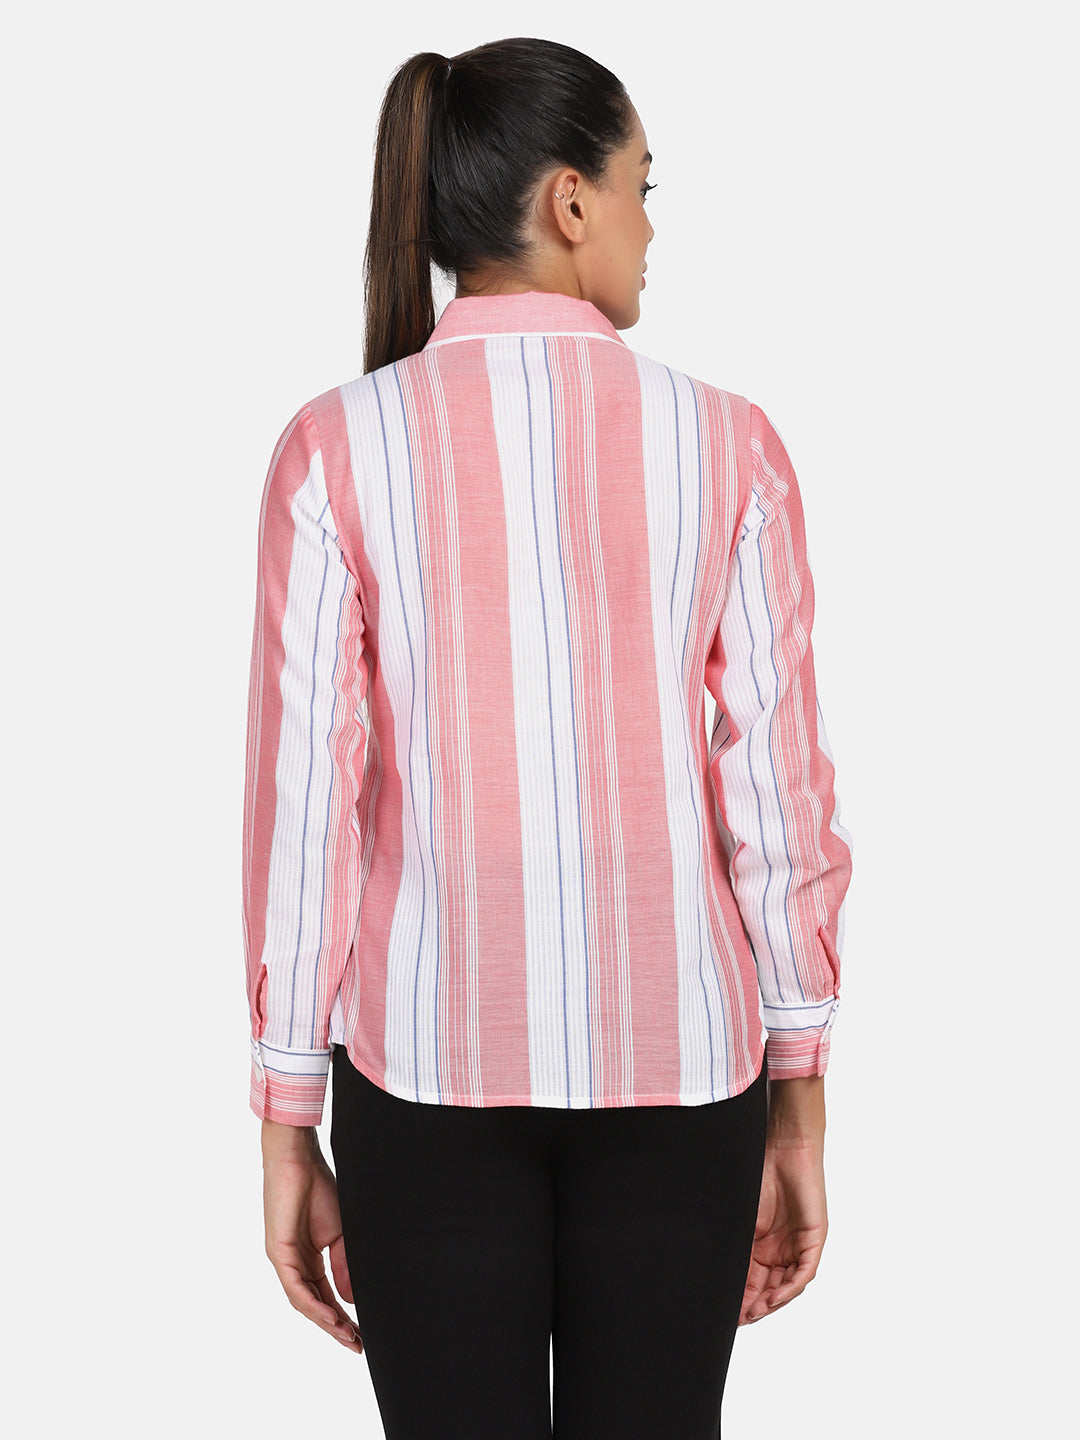 Striped Cotton Shirt - Peach